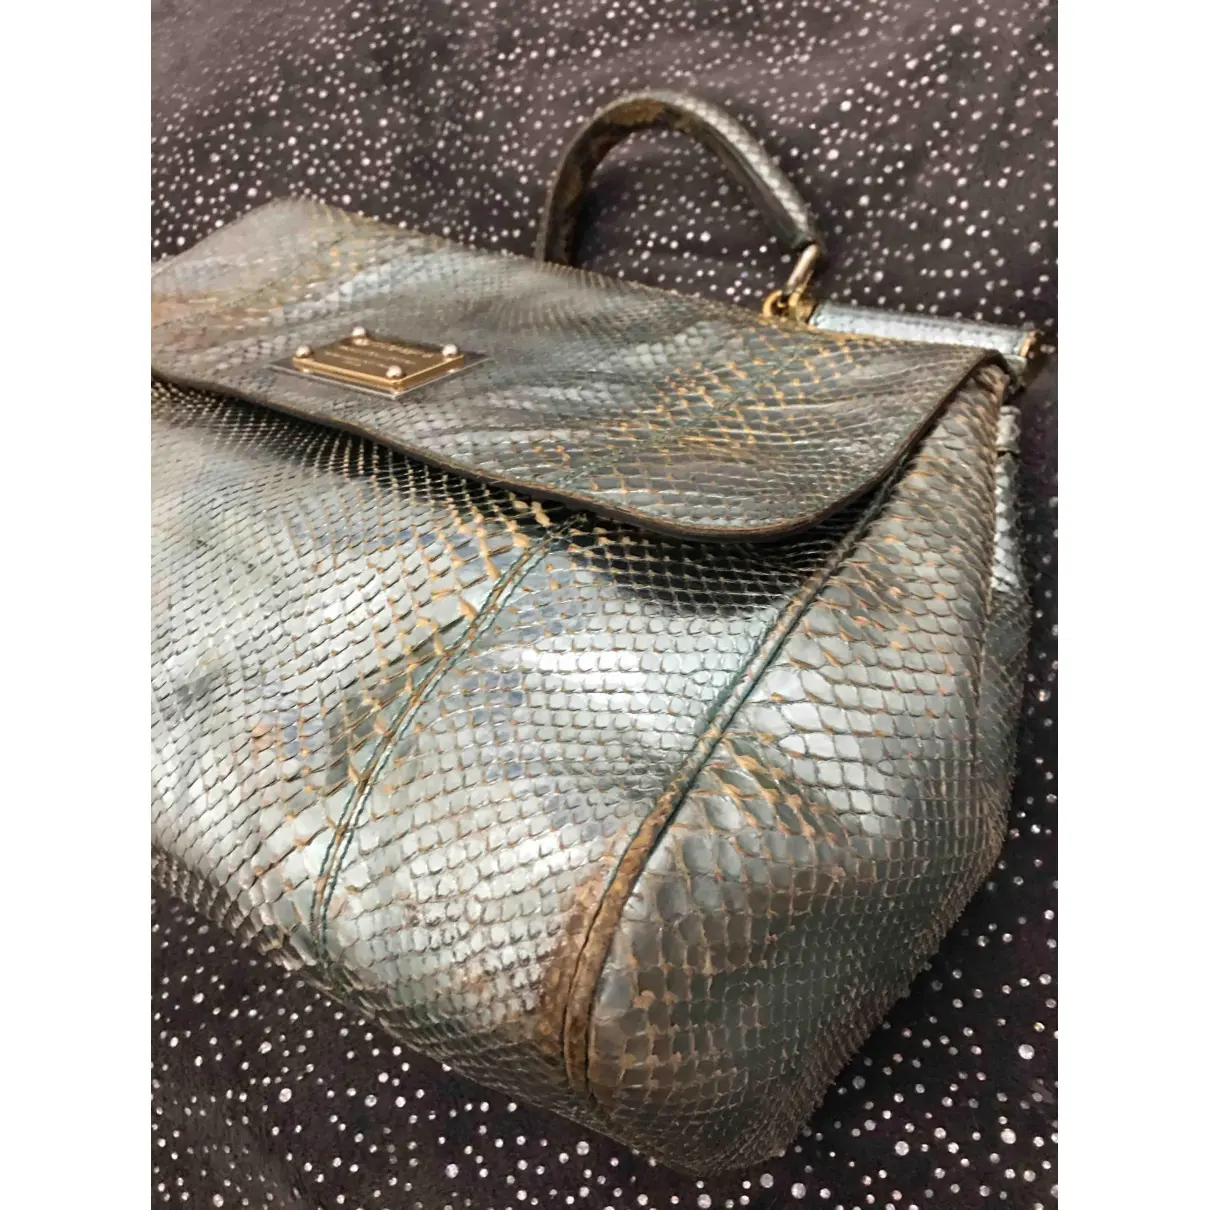 Buy Dolce & Gabbana Sicily python handbag online